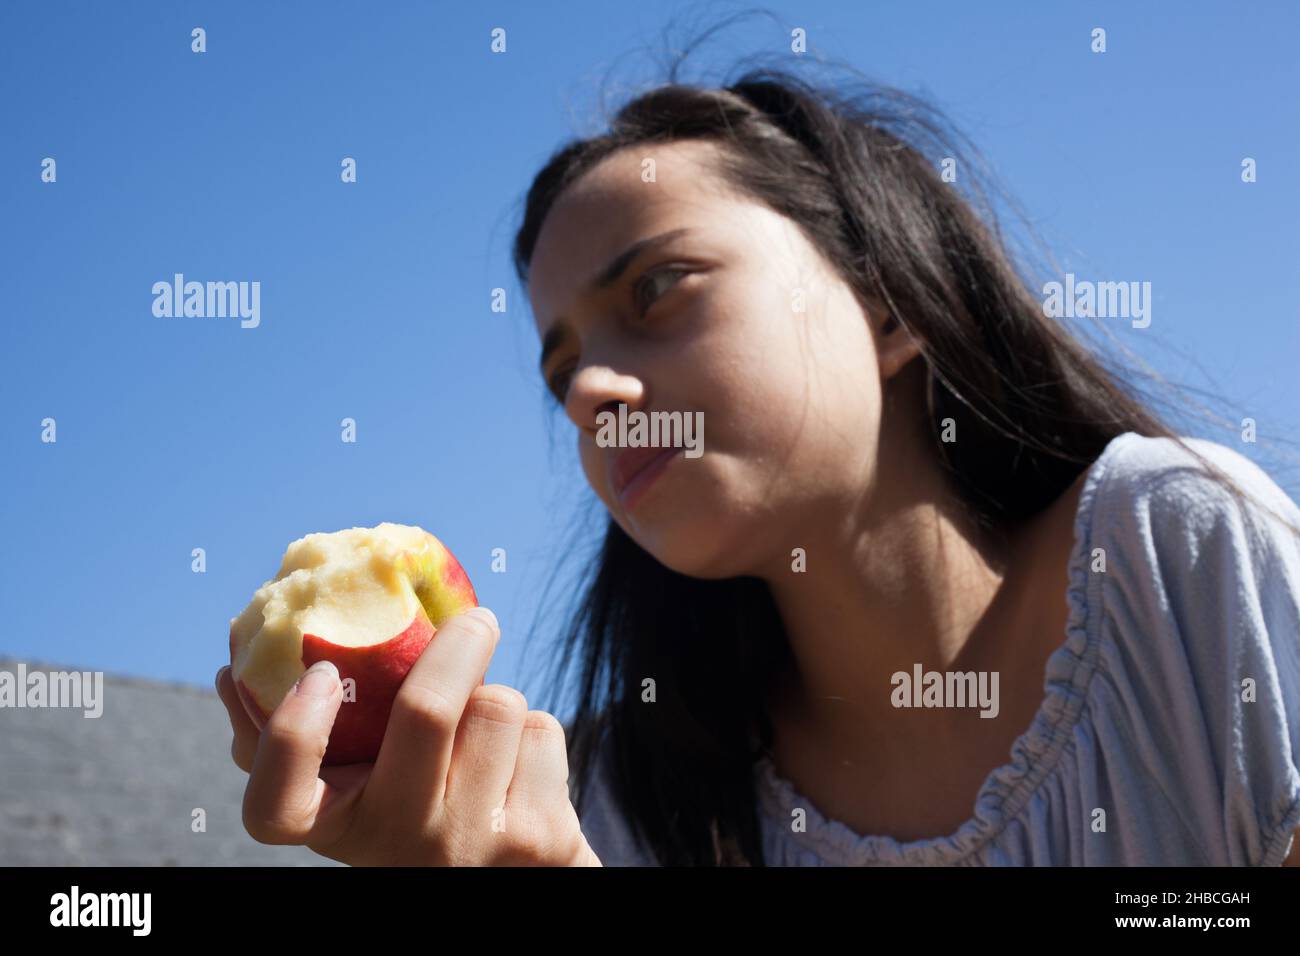 Une fille de 11 ans mangeant une pomme Banque D'Images